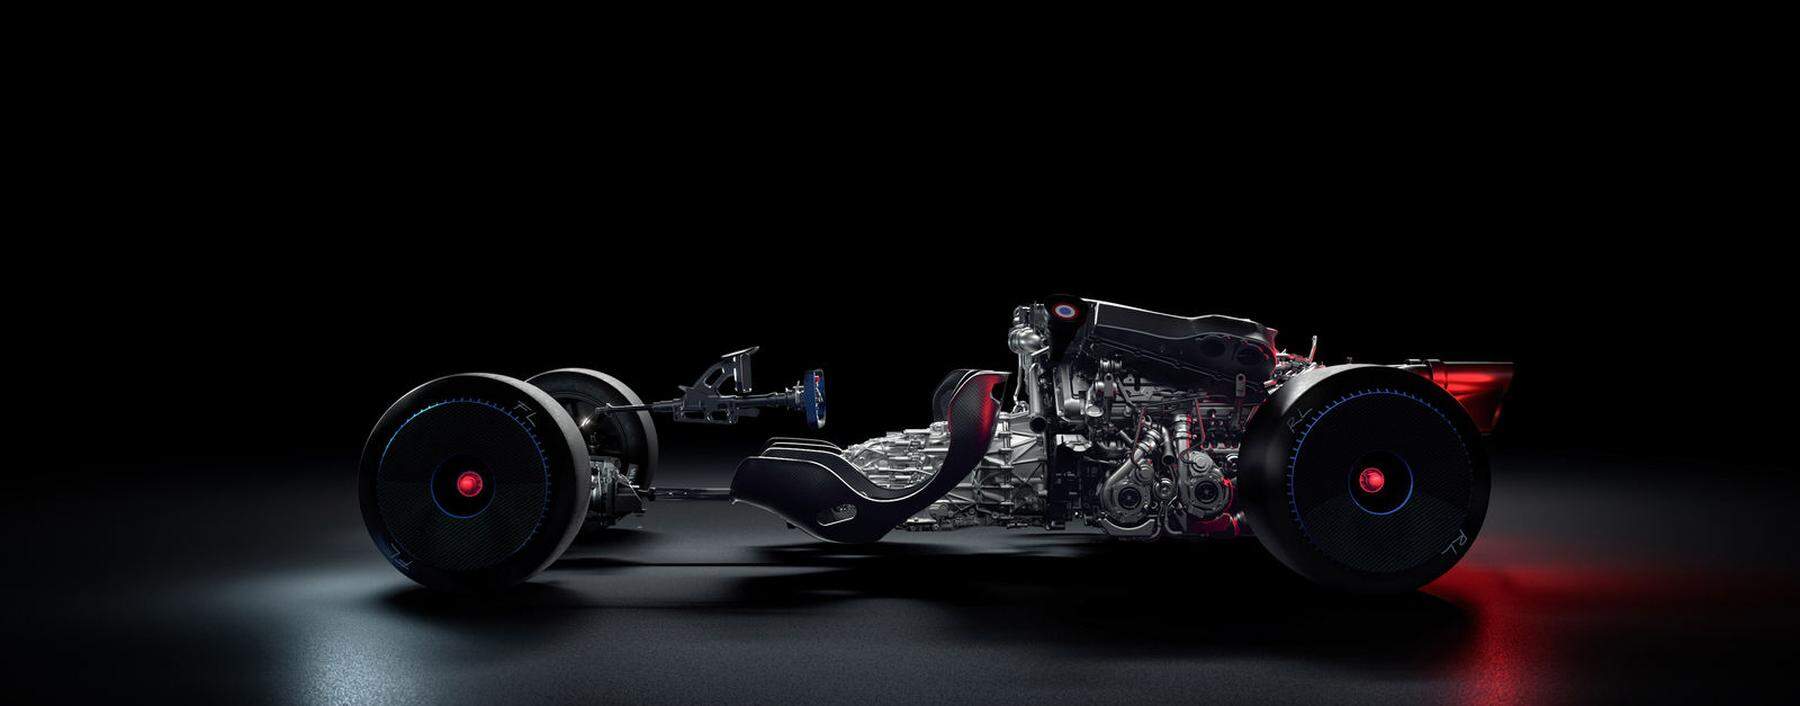 Monument von einem Motor: Sechszehn Zylinder, dazu ein Sitz und vier Räder. Der Bugatti-Bolide fährt mit einem Leistungsgewicht auf Formel-1-Niveau auf.